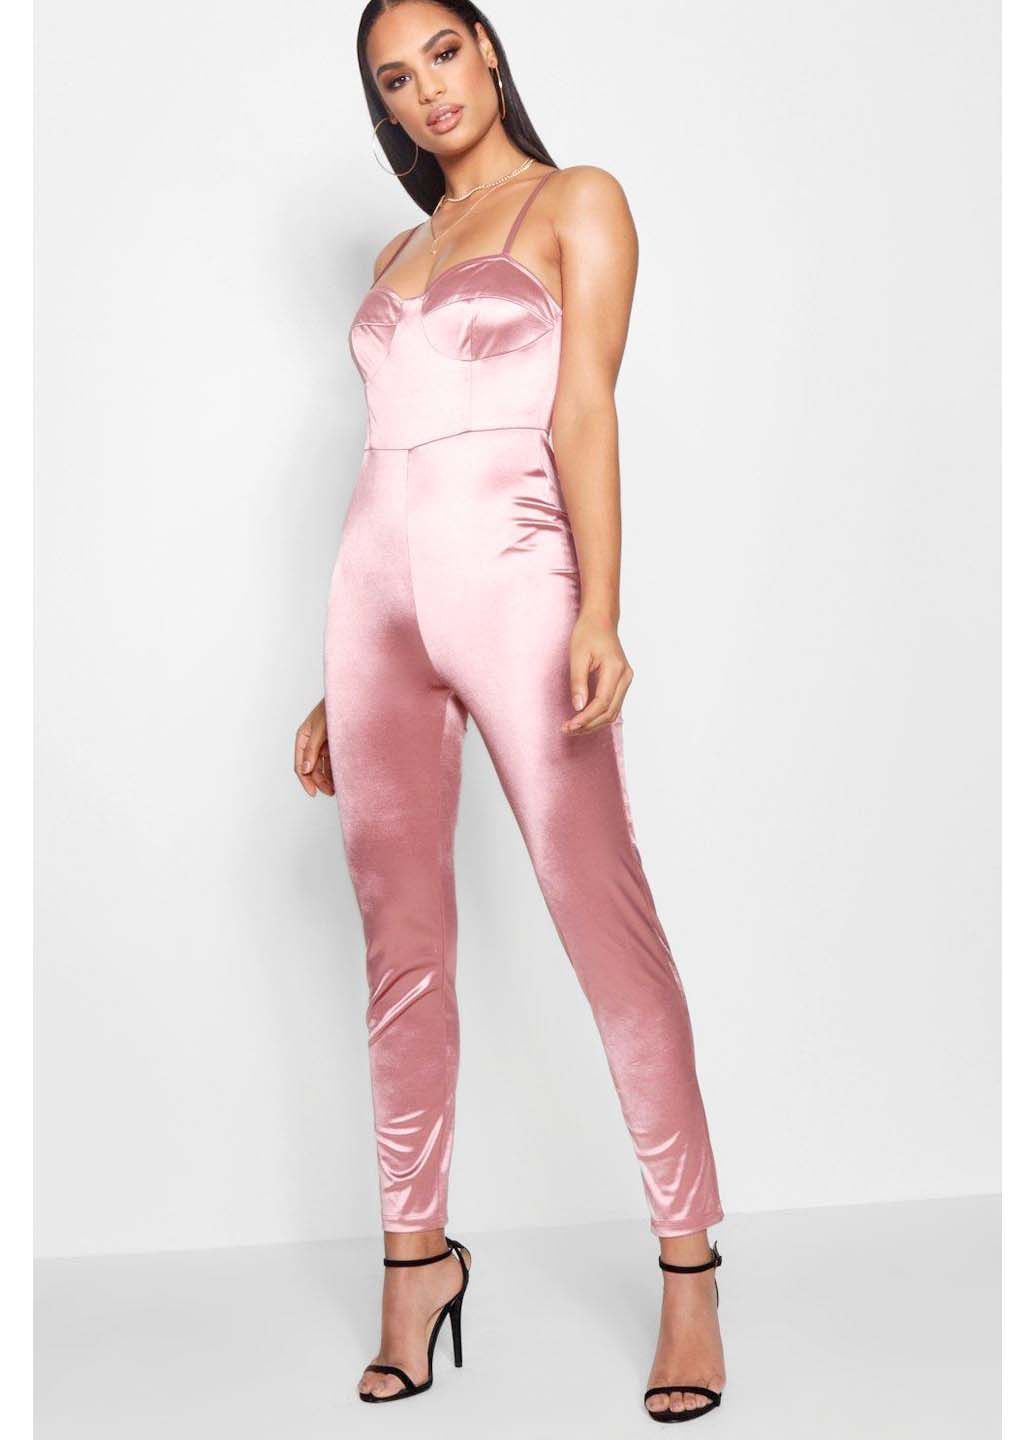 Атласный комбинезон штанами Boohoo комбинезон-брюки однотонный розовый коктейльный атлас